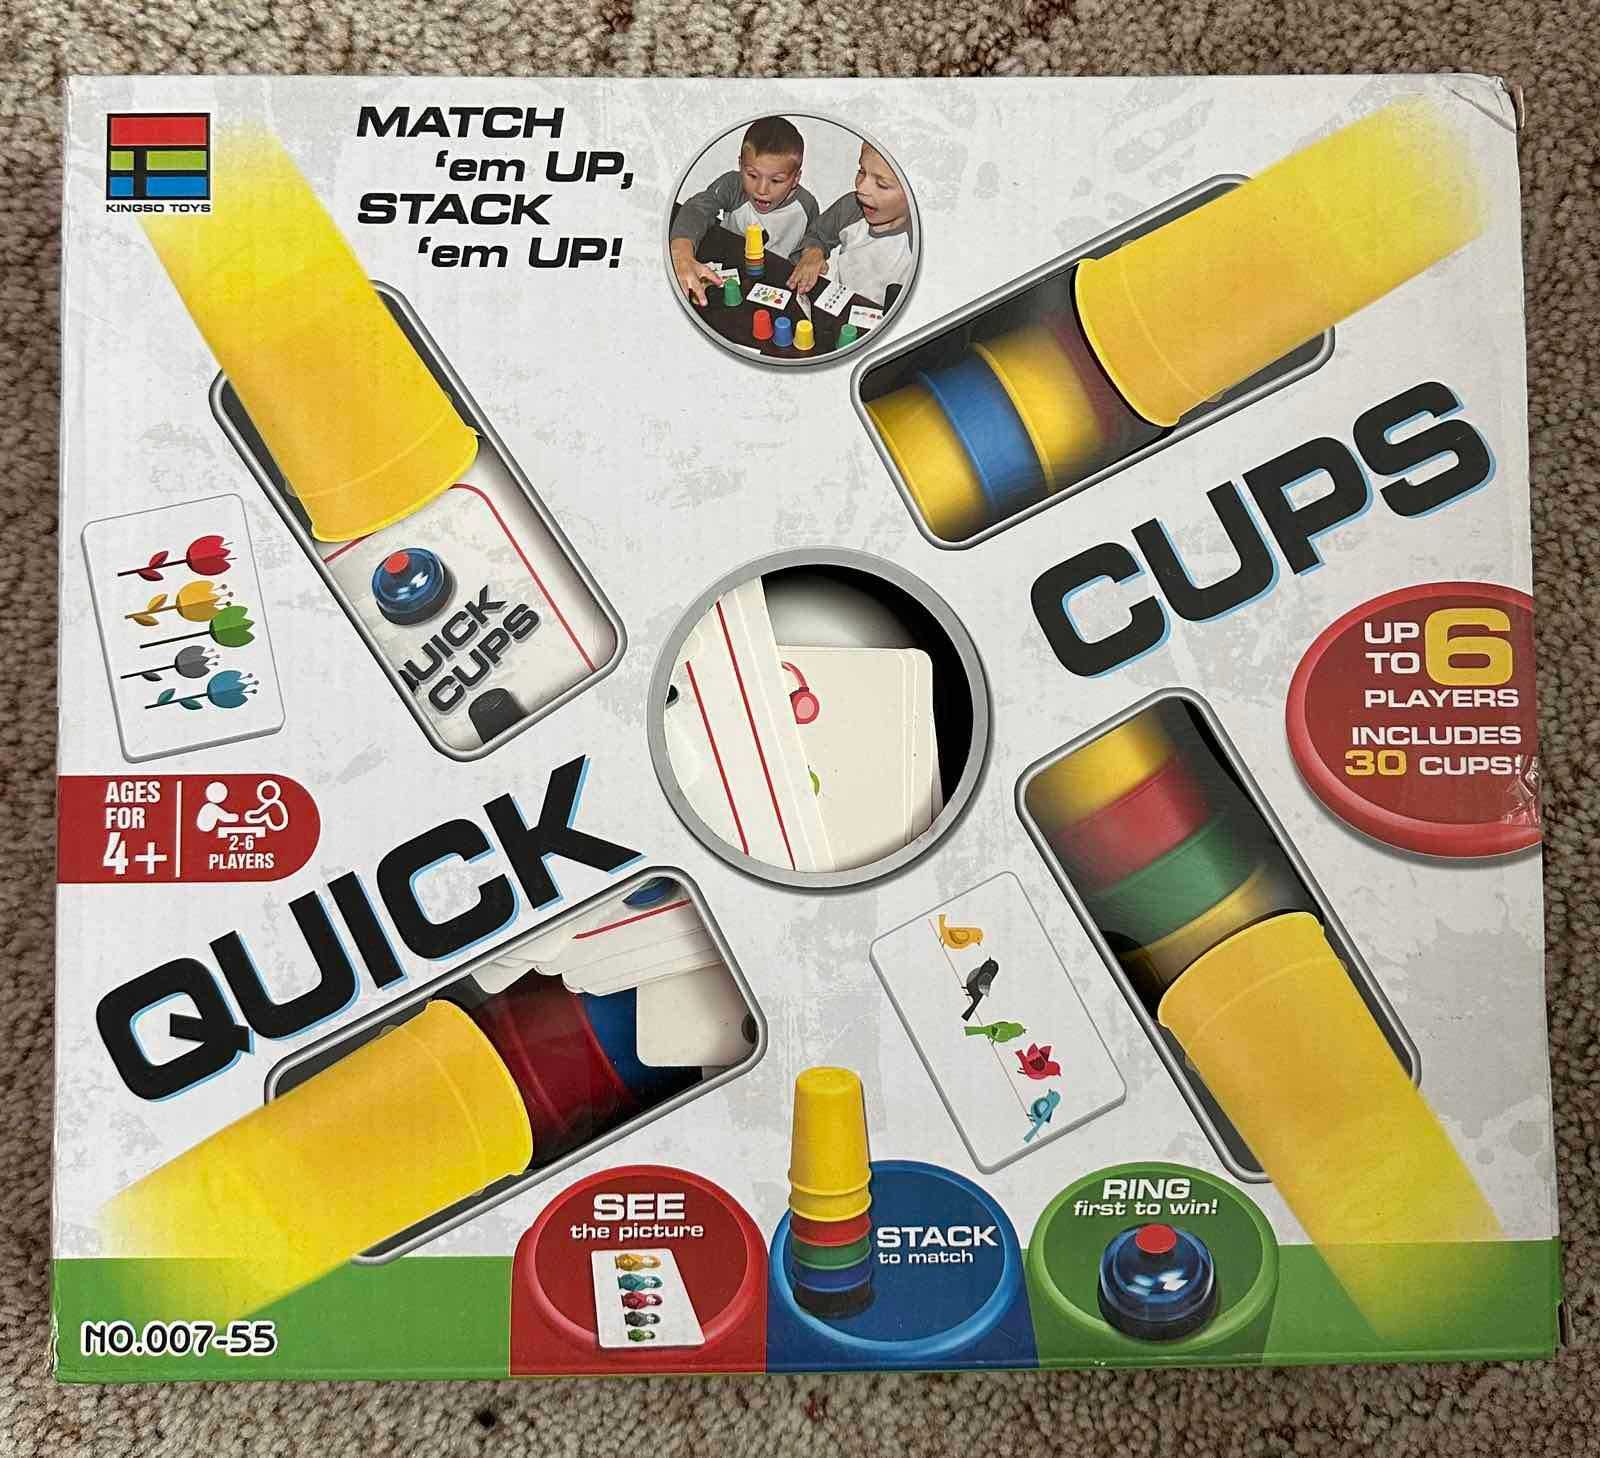 Настольная игра "Quick Cups"